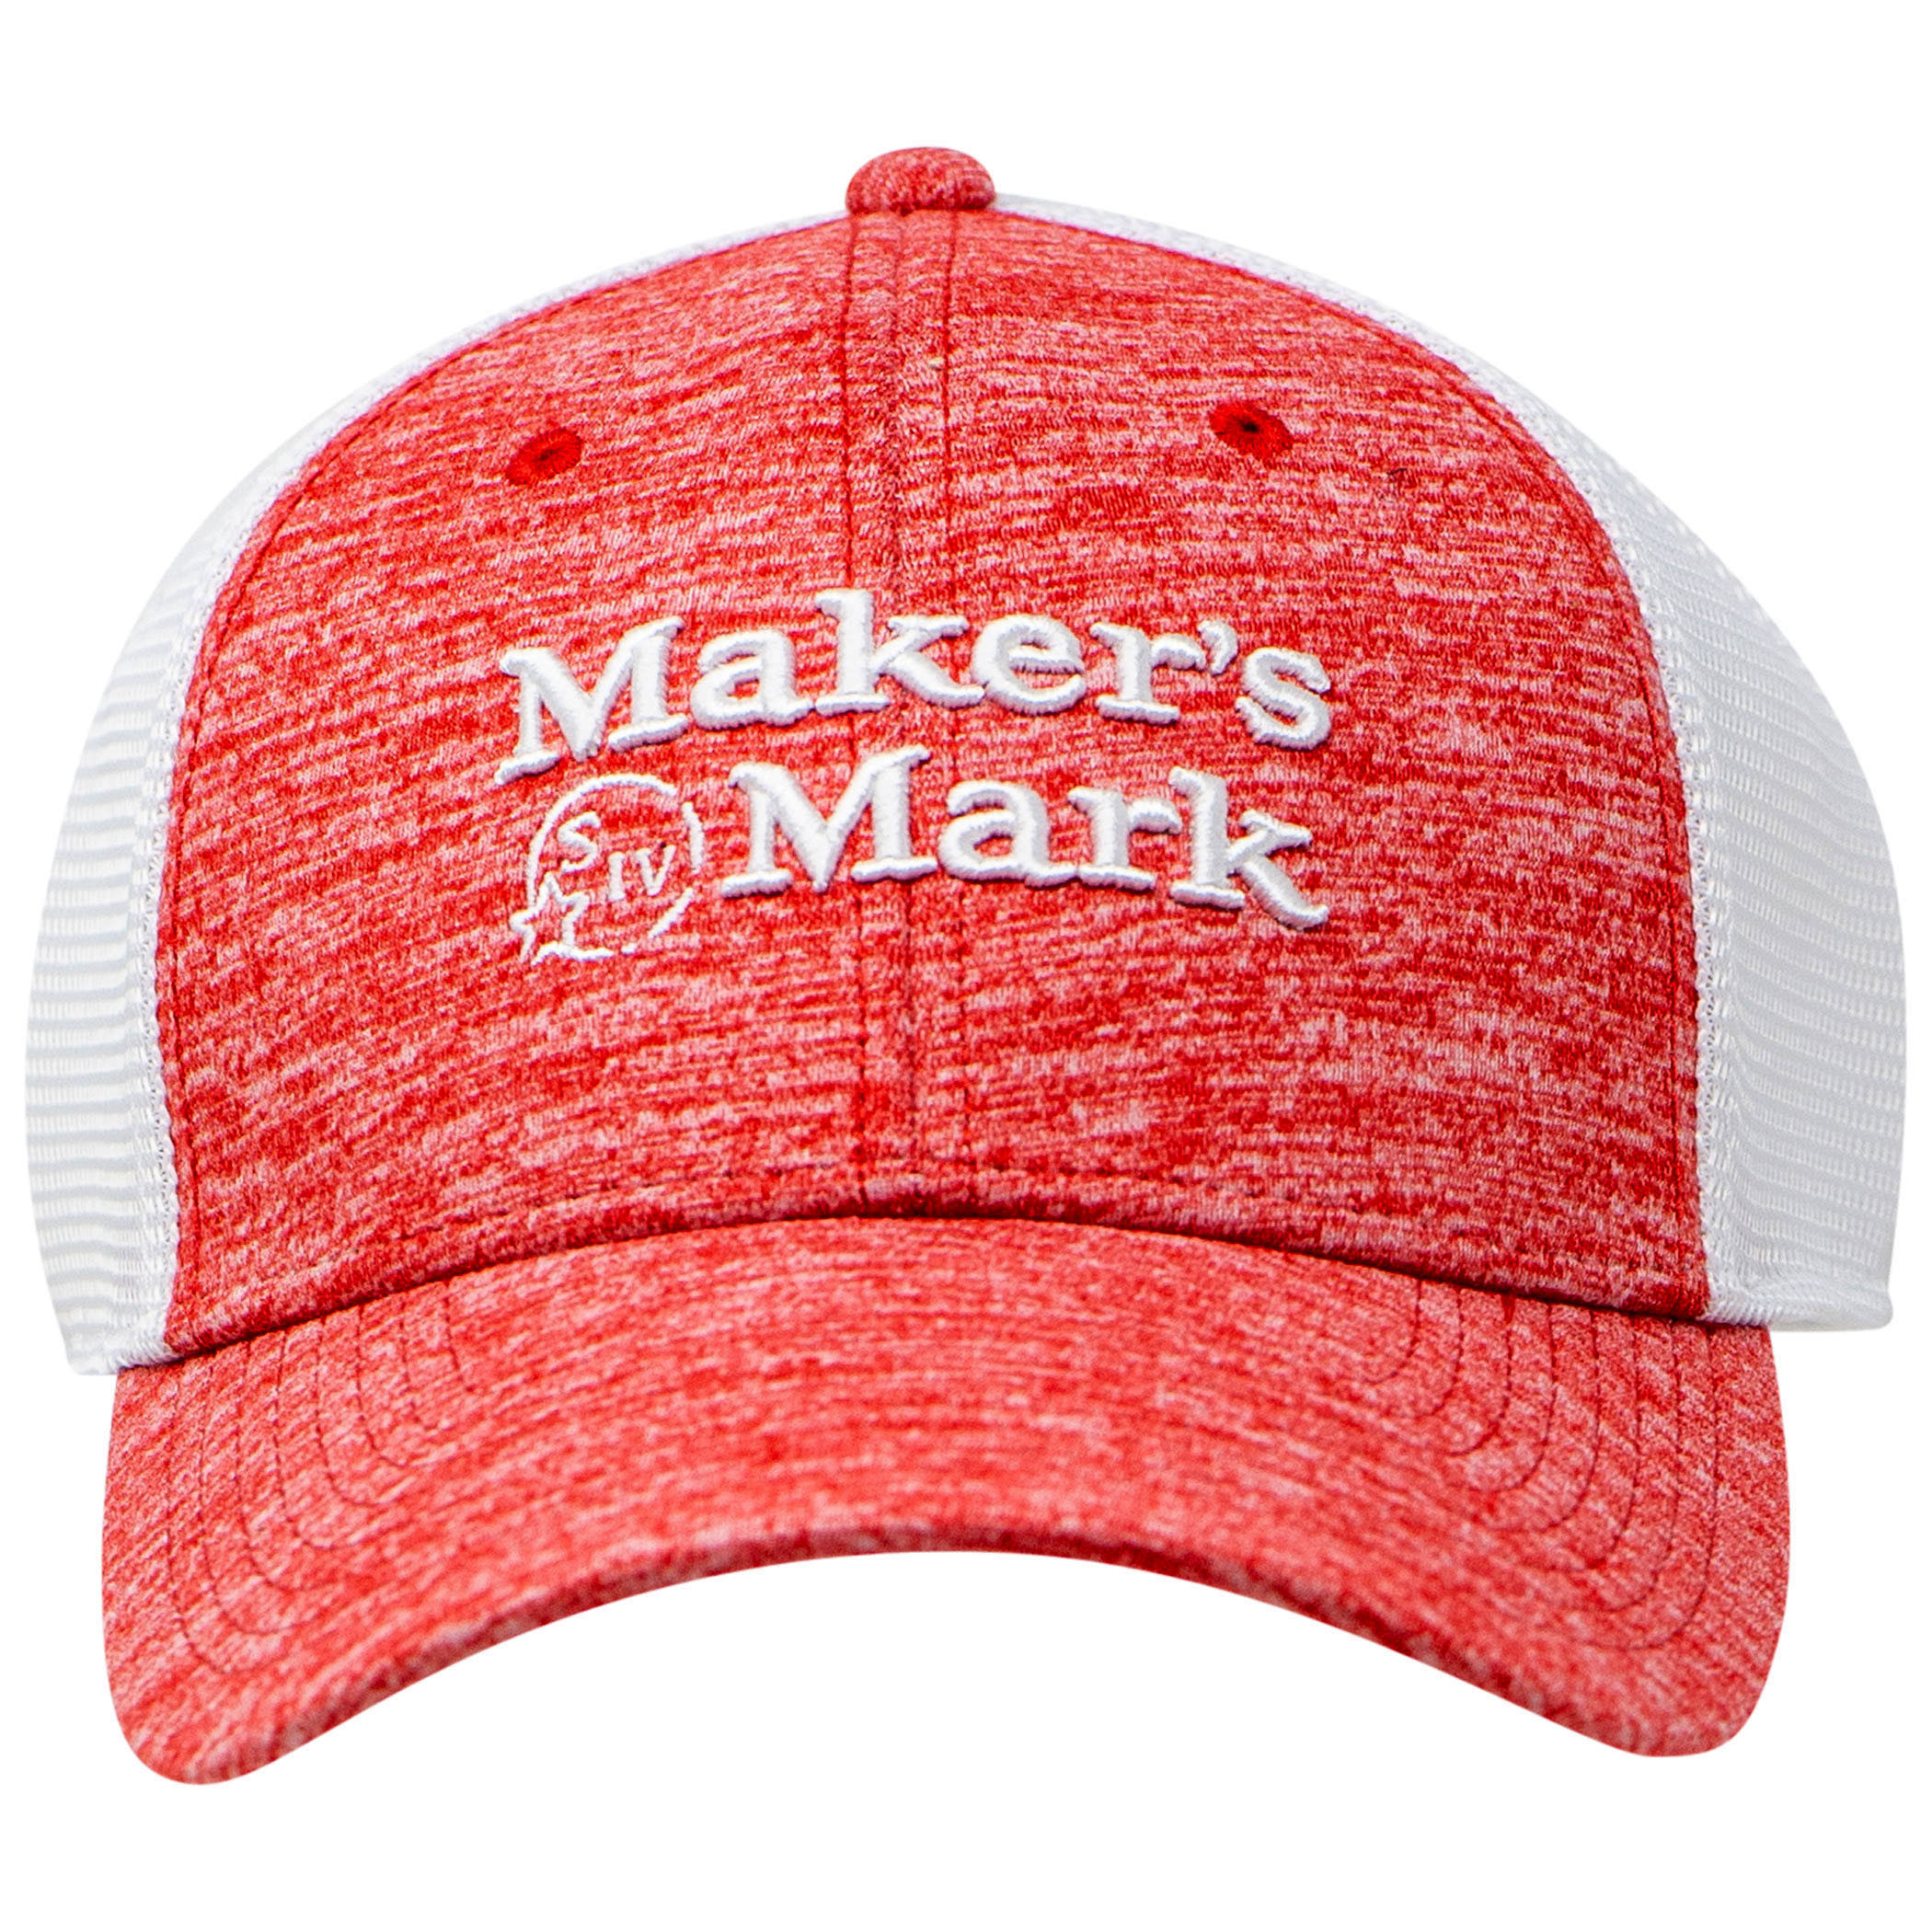 Maker's Mark Mesh Back Trucker Hat